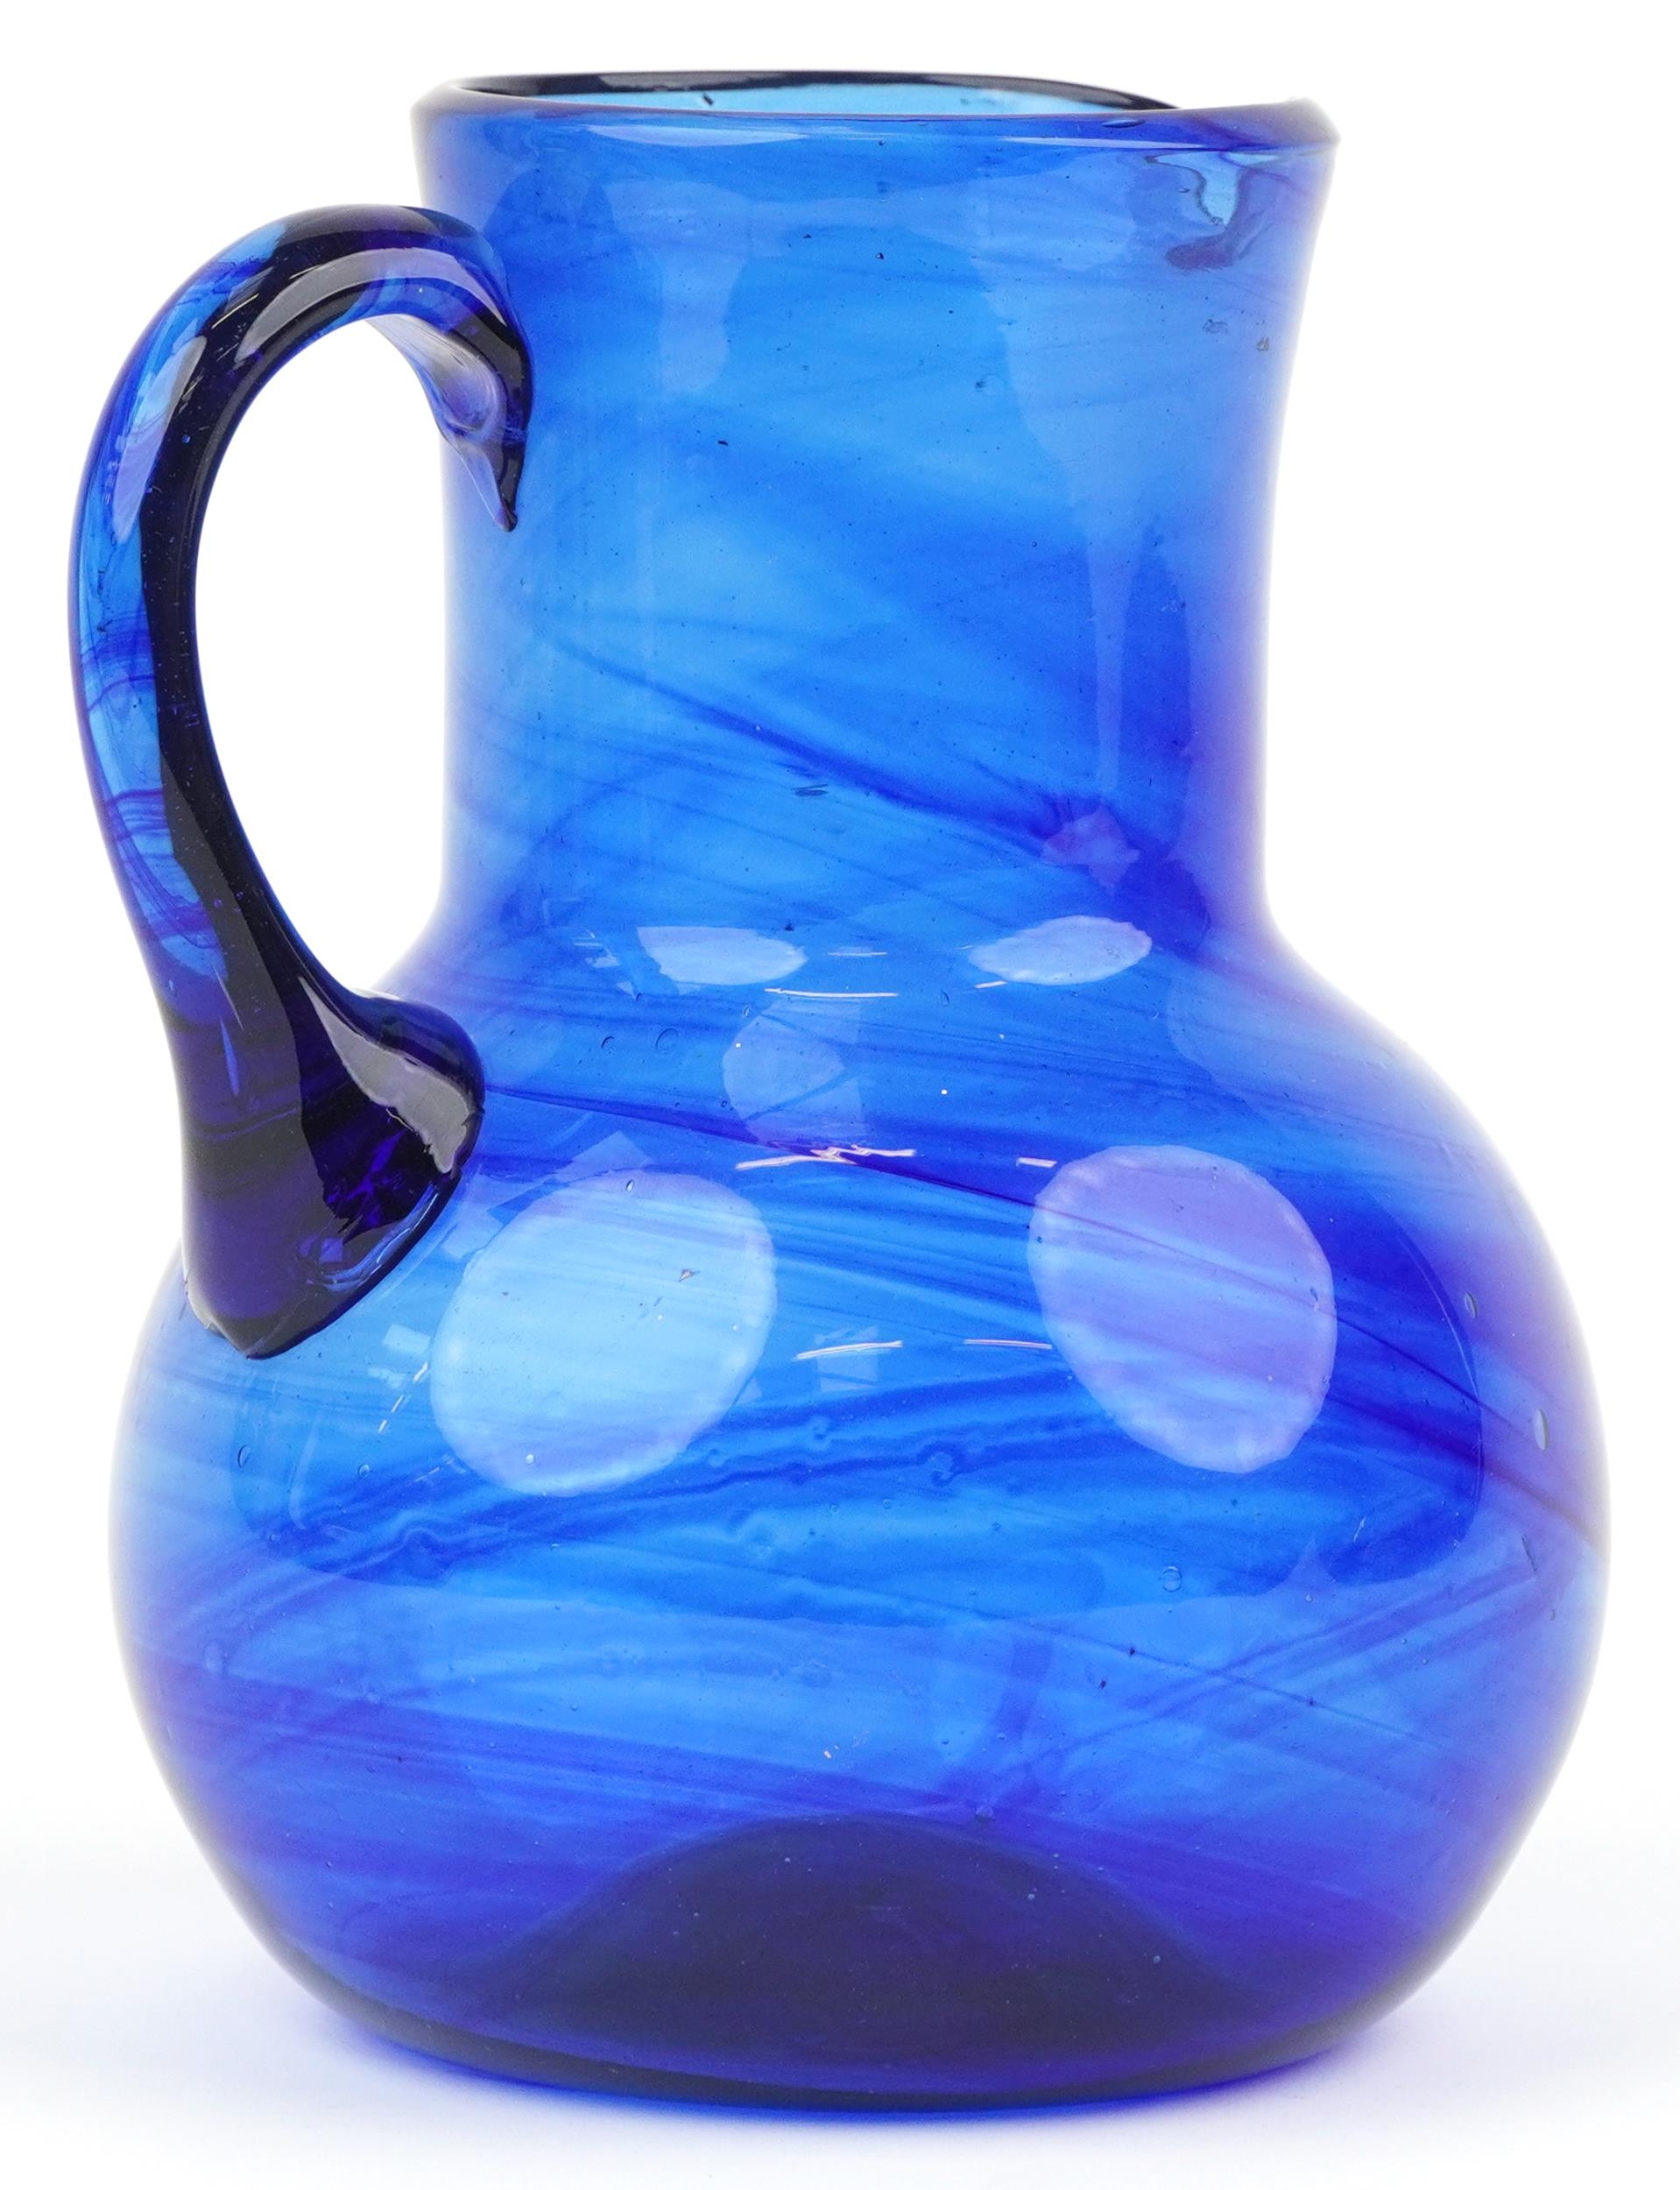 Blue art glass jug with unpolished pontil, 18cm high - Image 2 of 5